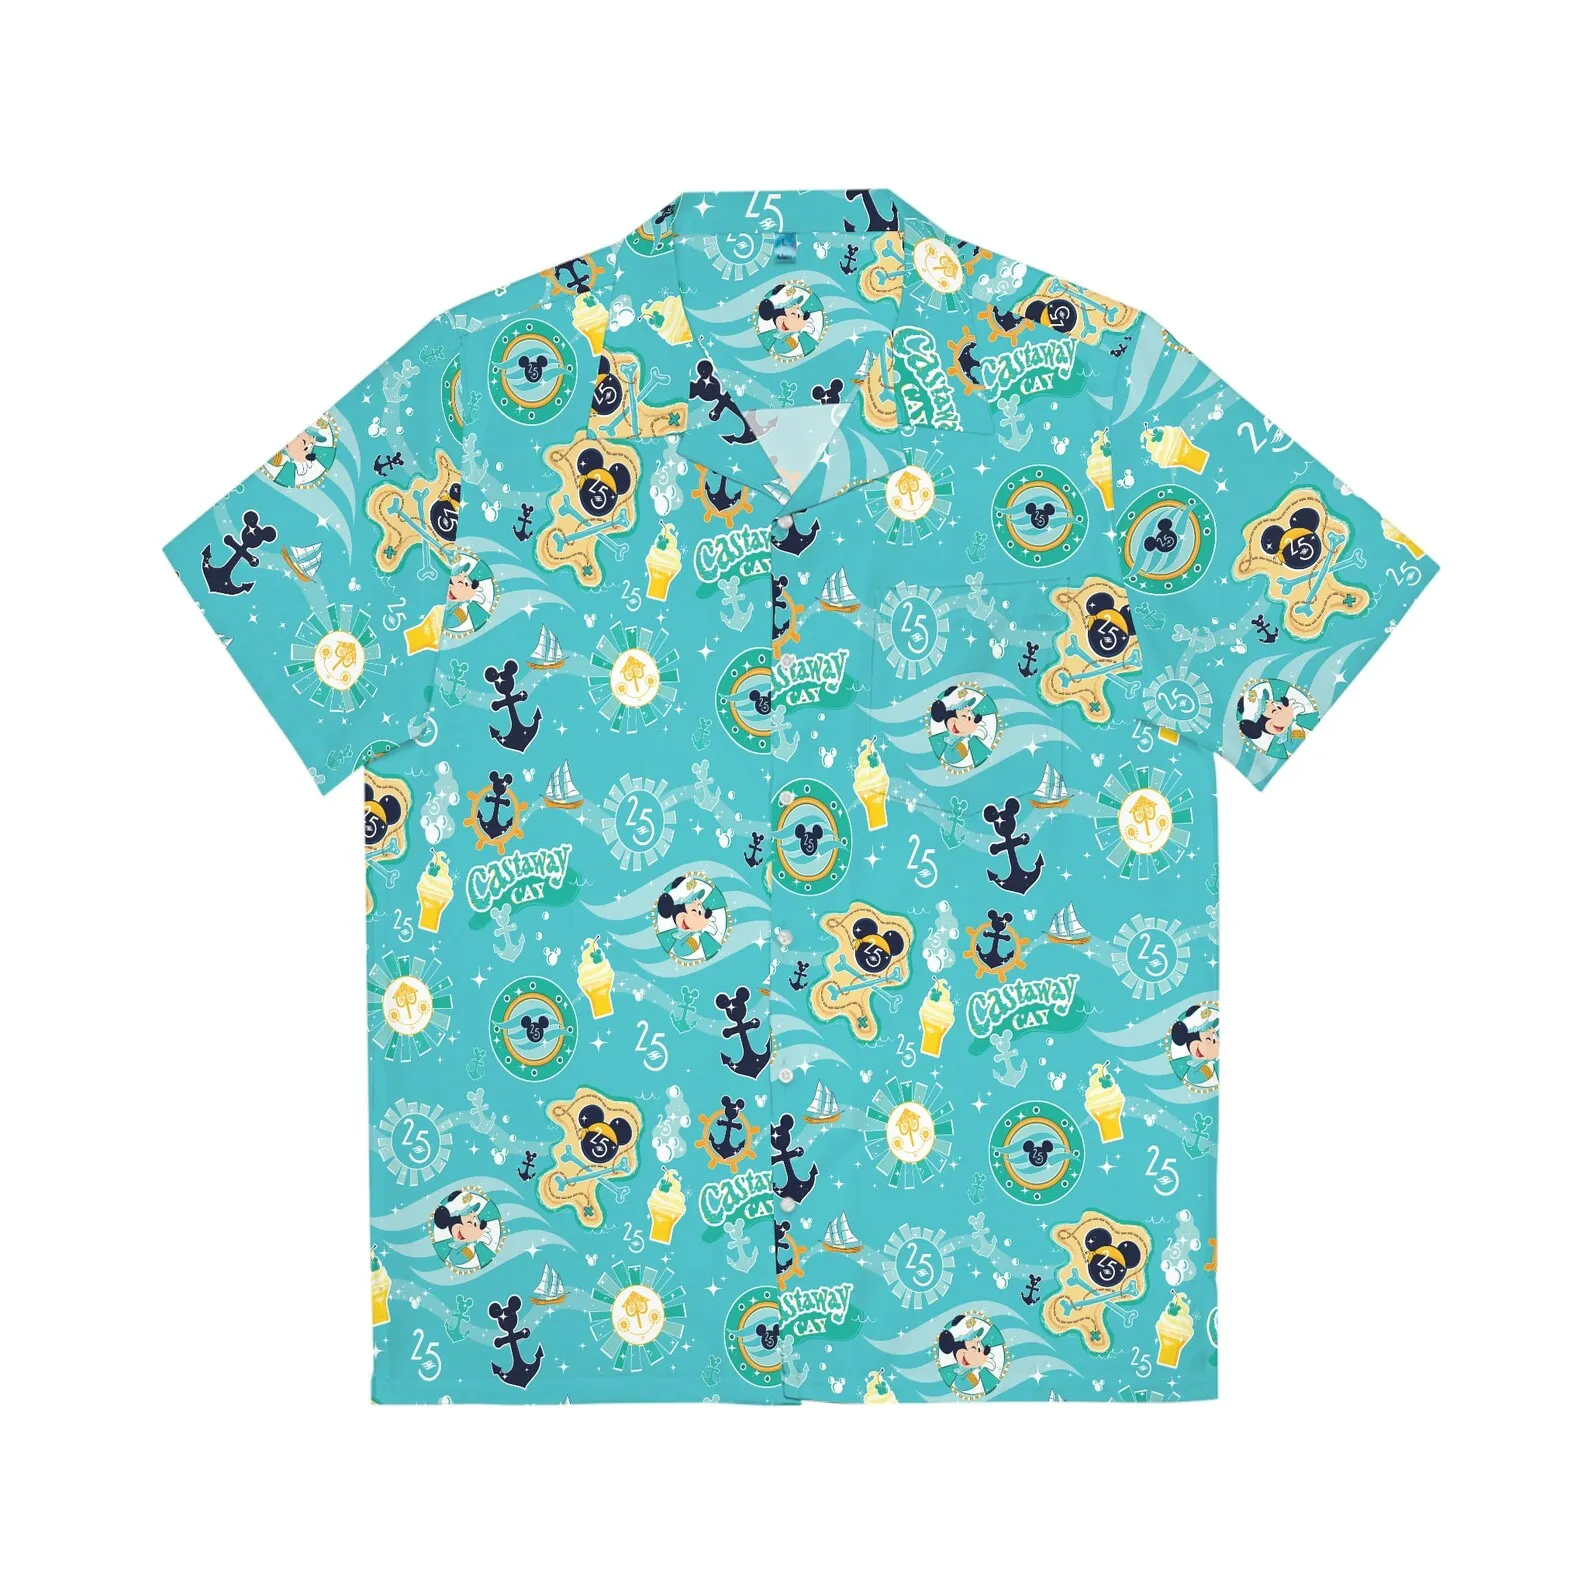 

Гавайская Мужская рубашка Dcl с Микки Маусом, винтажная гавайская рубашка с пуговицами, с принтом Диснея круиз-линия, на 25-ю годовщину, лето